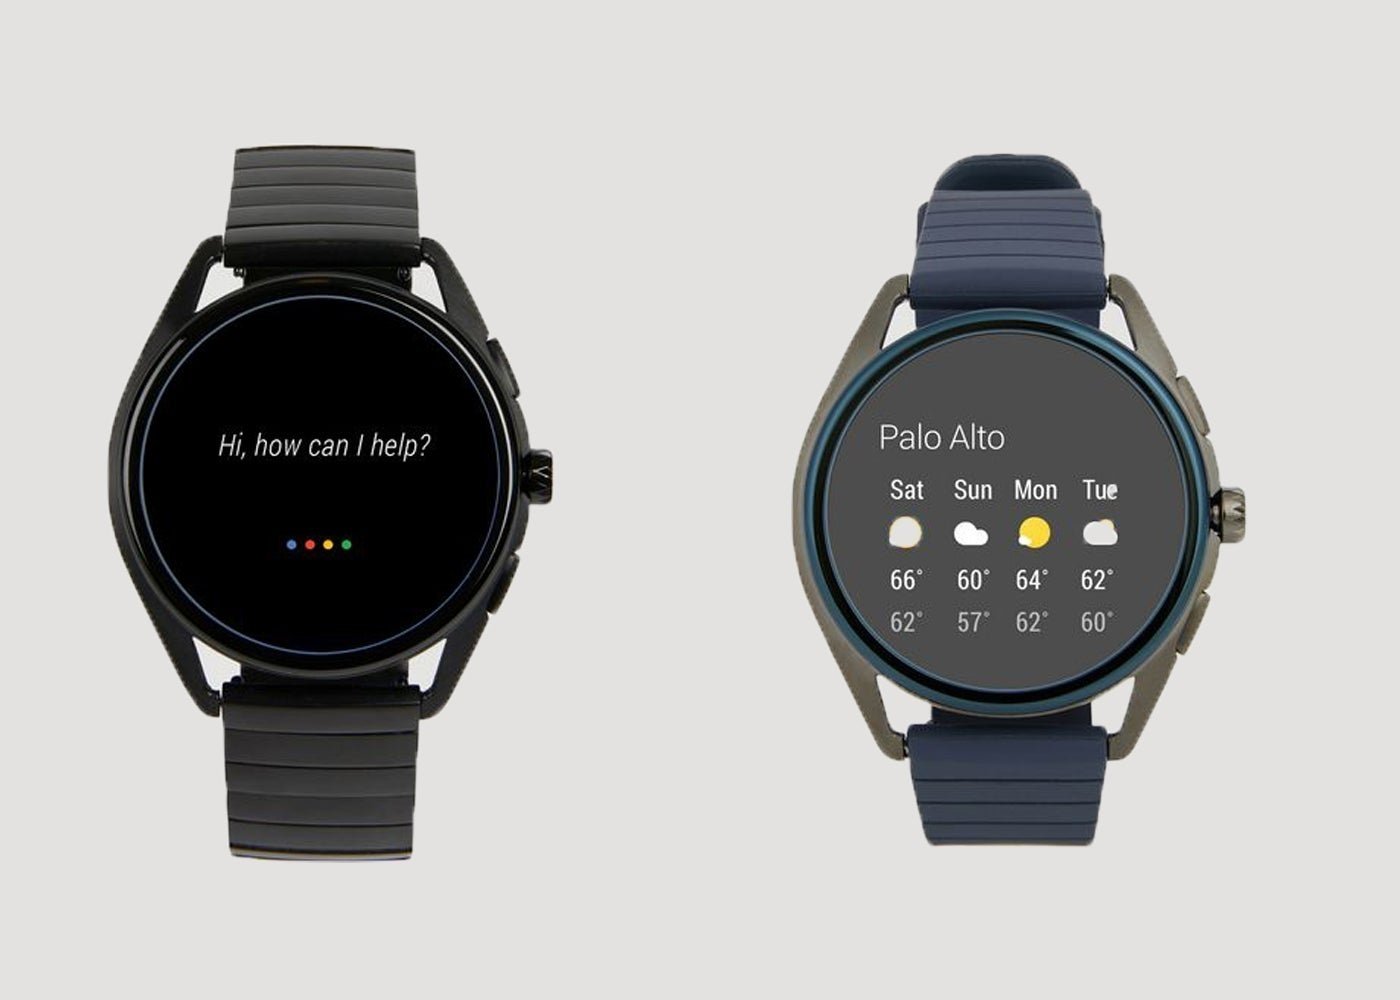 Armani ha lanzado un reloj con Wear OS, NFC... y el mismo procesador anticuado de siempre